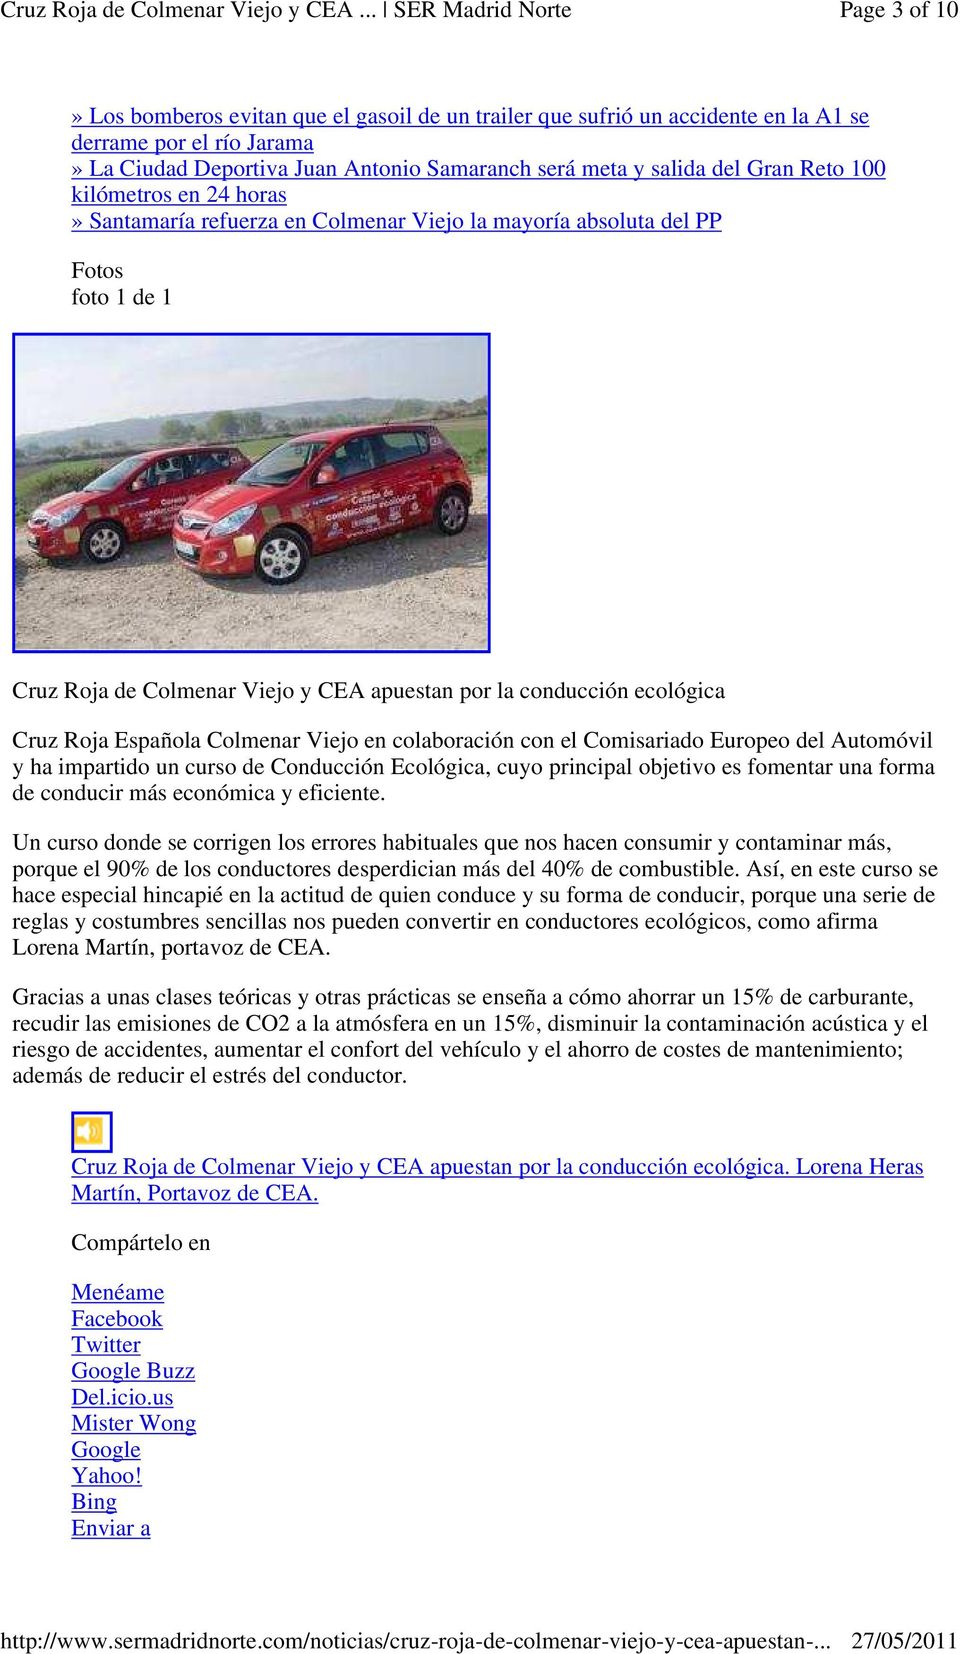 Española Colmenar Viejo en colaboración con el Comisariado Europeo del Automóvil y ha impartido un curso de Conducción Ecológica, cuyo principal objetivo es fomentar una forma de conducir más